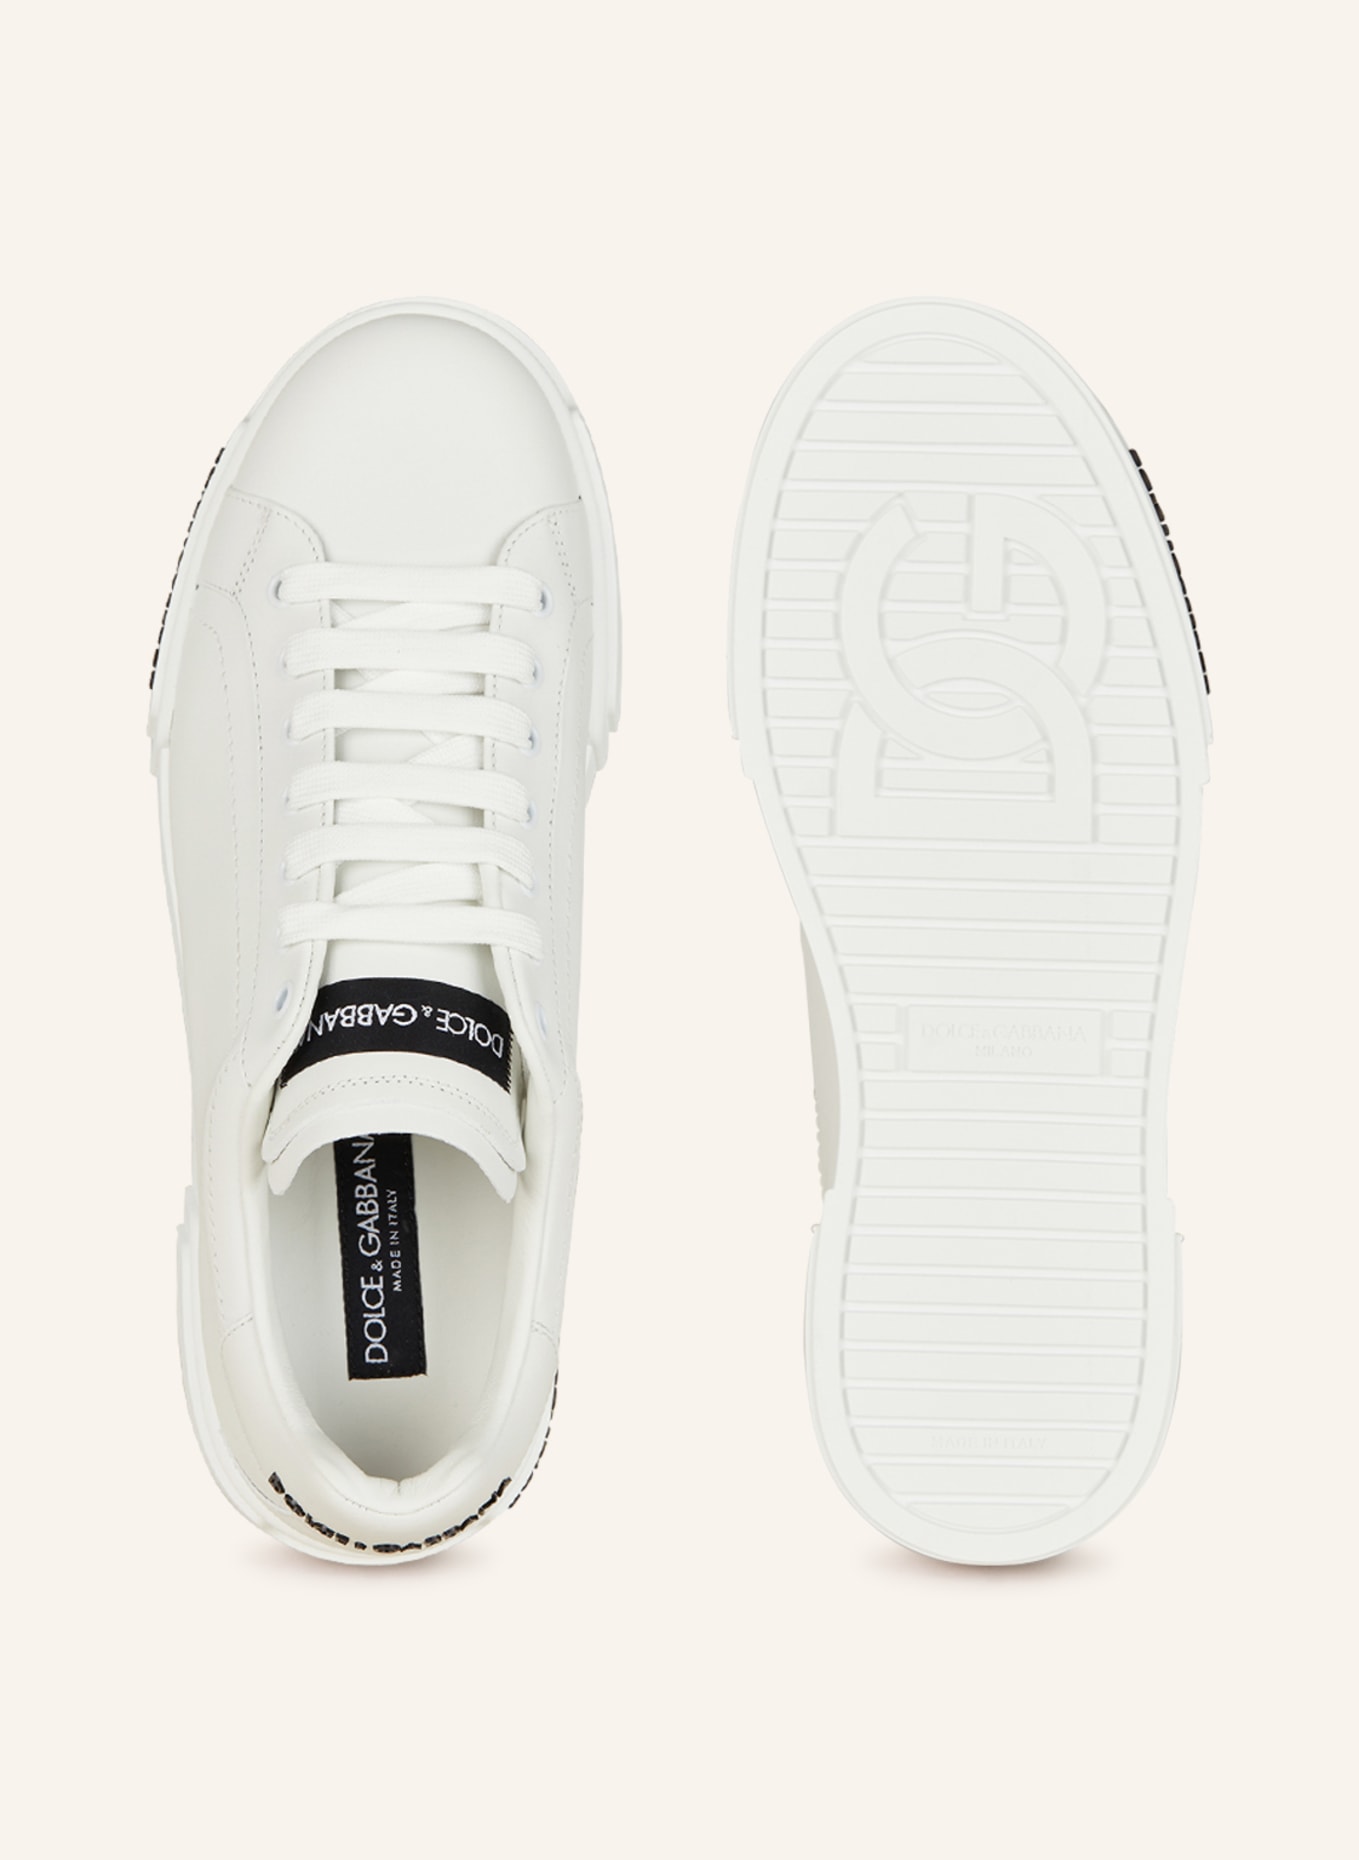 DOLCE & GABBANA Sneakers PORTOFINO, Color: WHITE (Image 5)